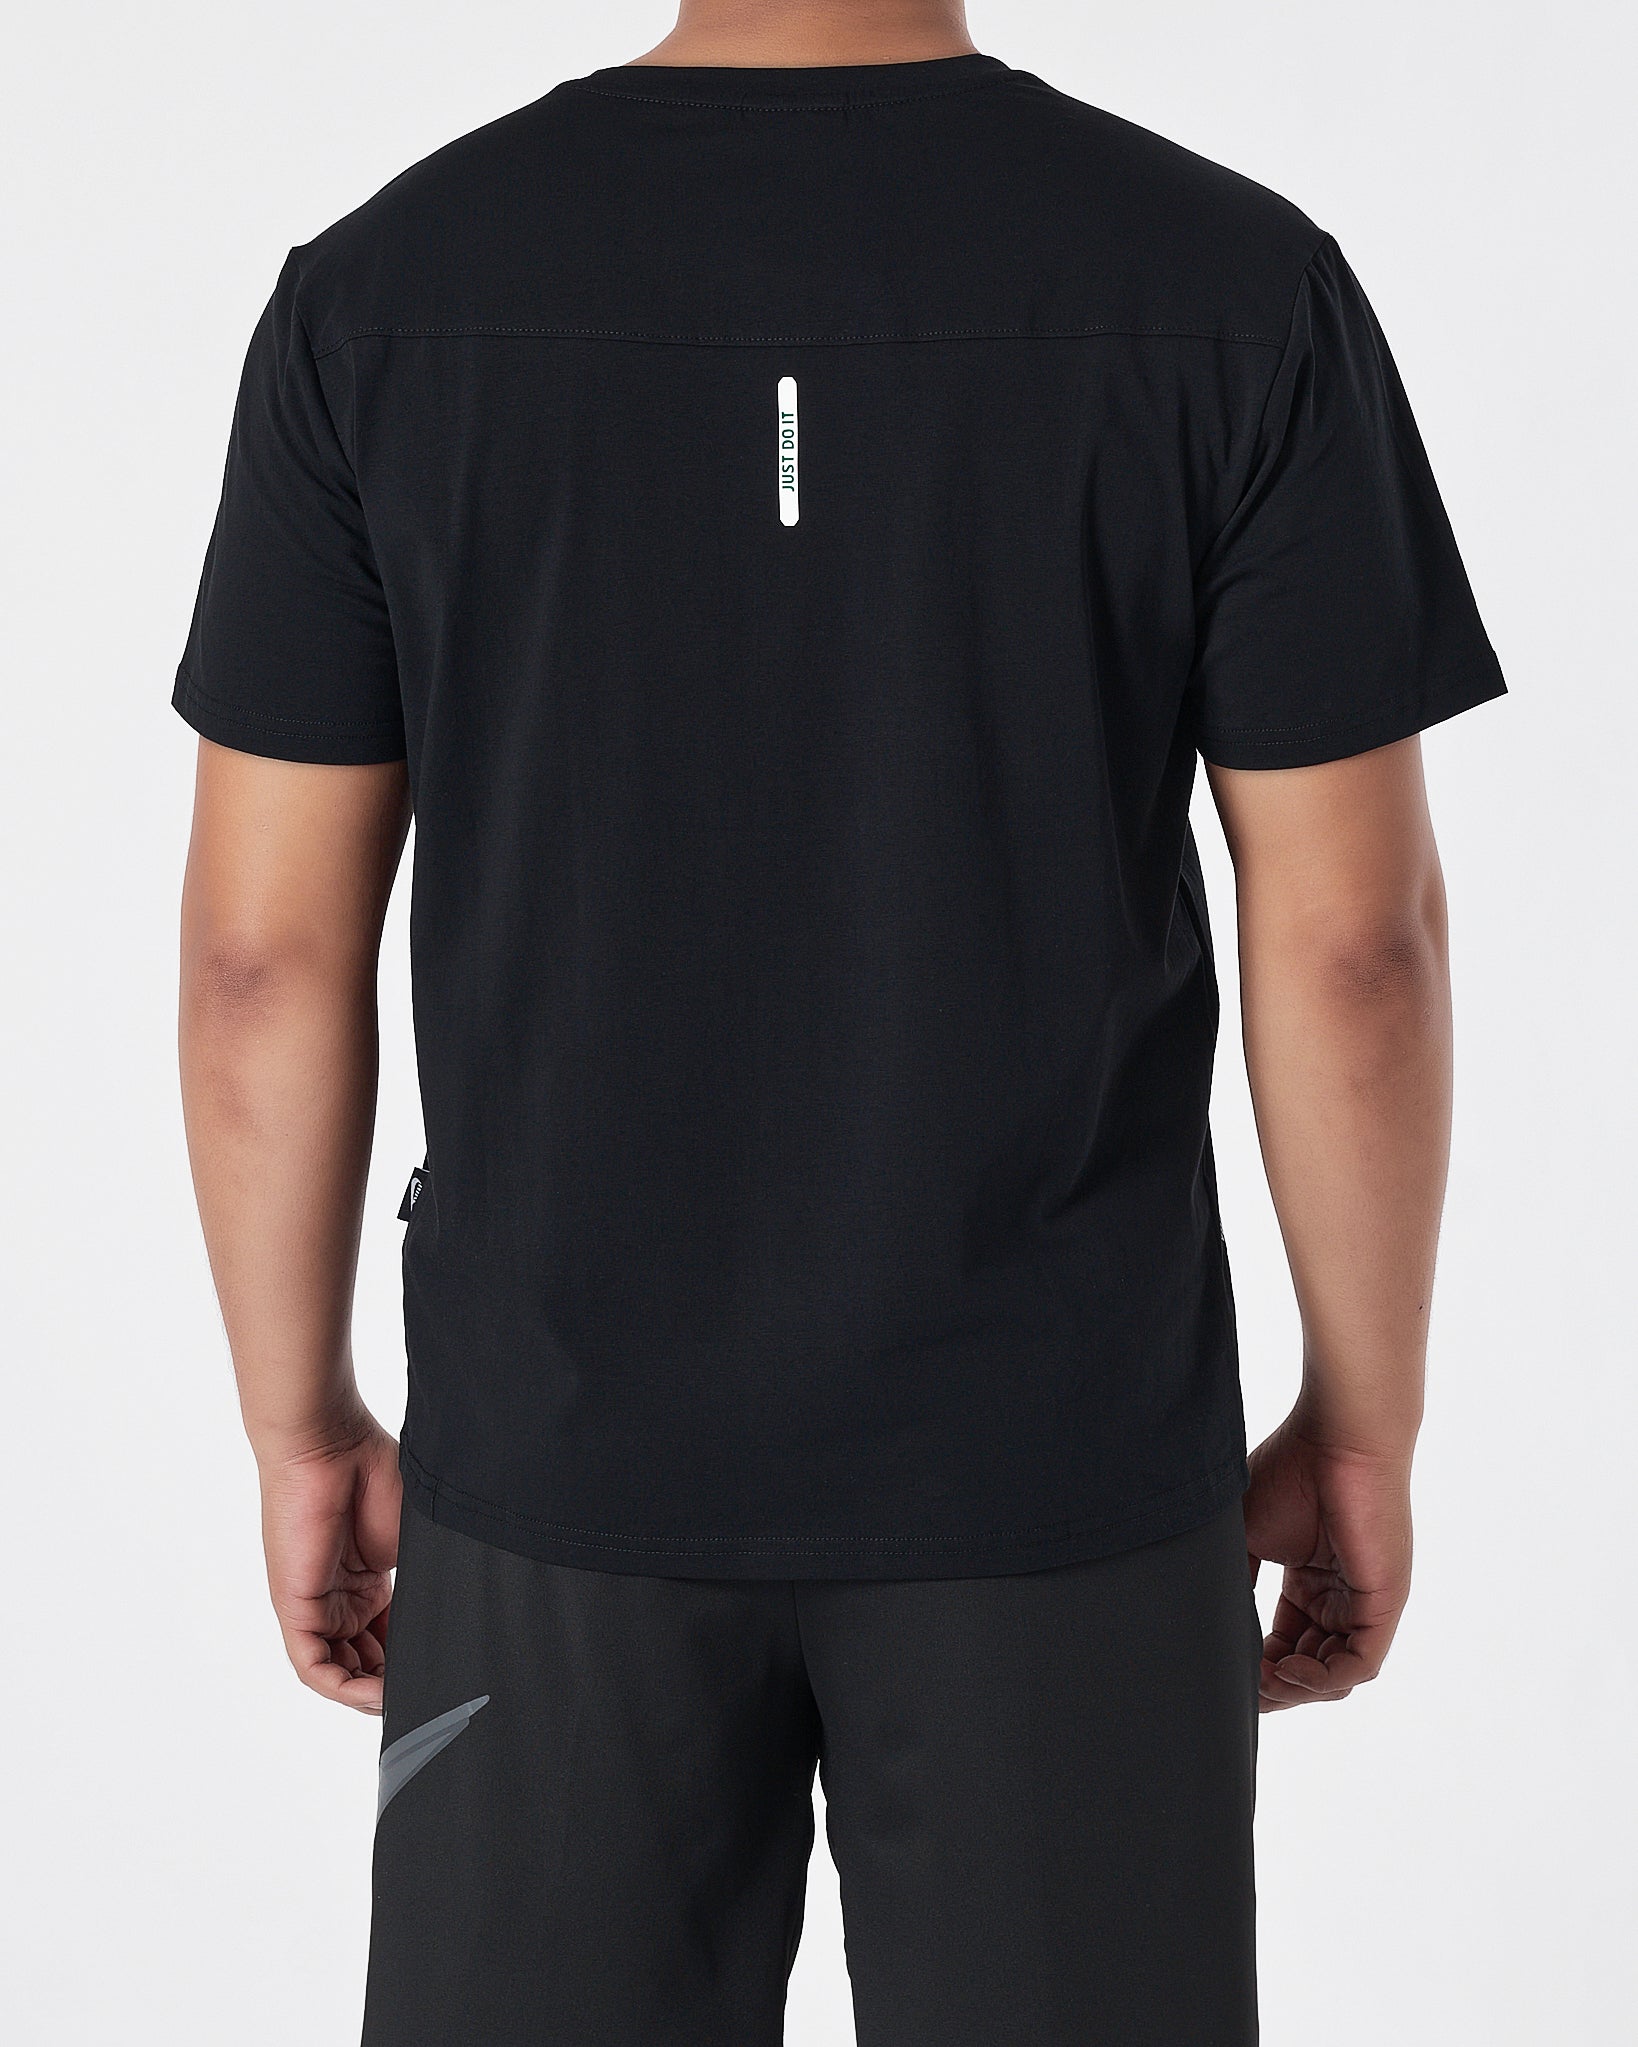 NIK Swooh  Shoulder Printed Men Black T-Shirt 13.50